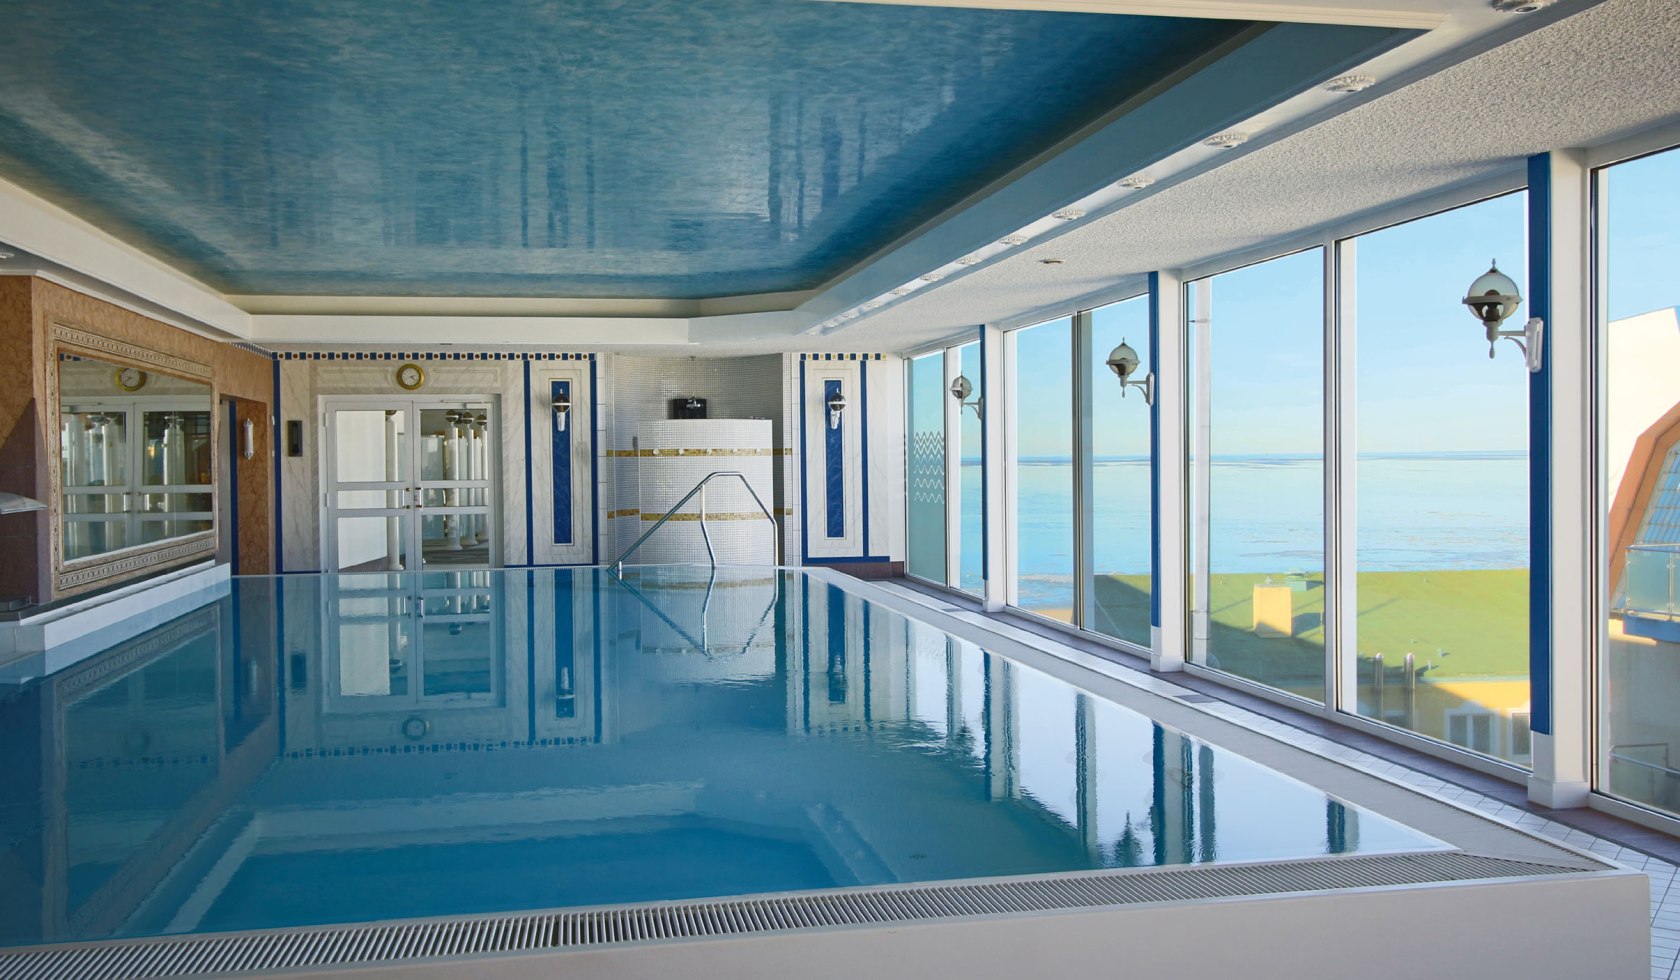 Schwimmbad im Hotel Strandperle mit Aussieht auf das Meer, © Hotel Strandperle / Voxel Design